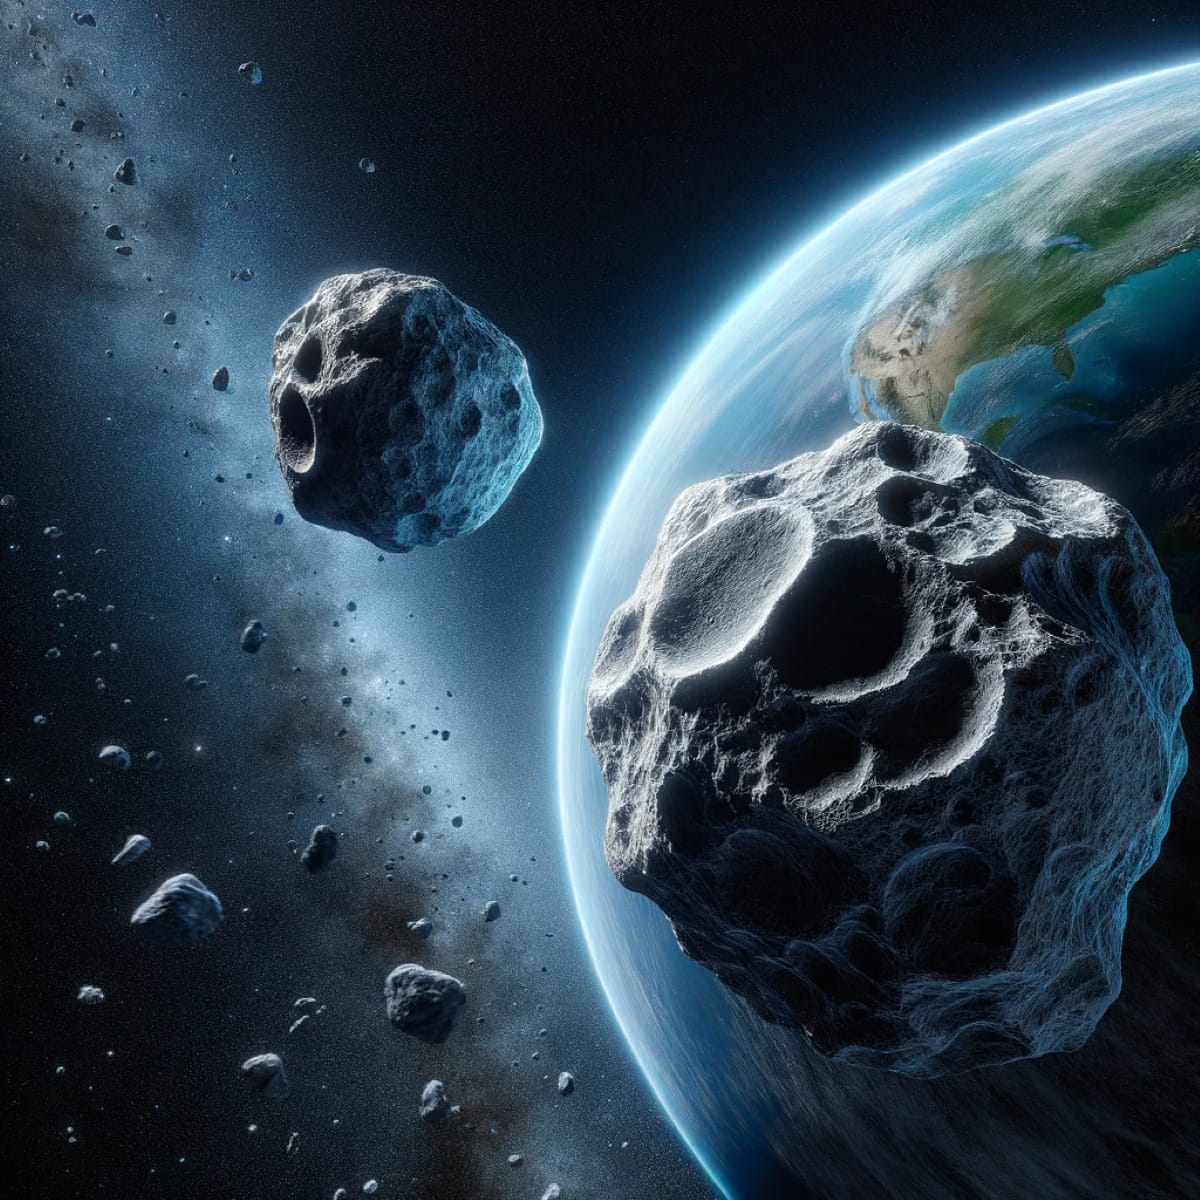 Imagen ilustrativa de dos asteroides acercándose a La Tierra